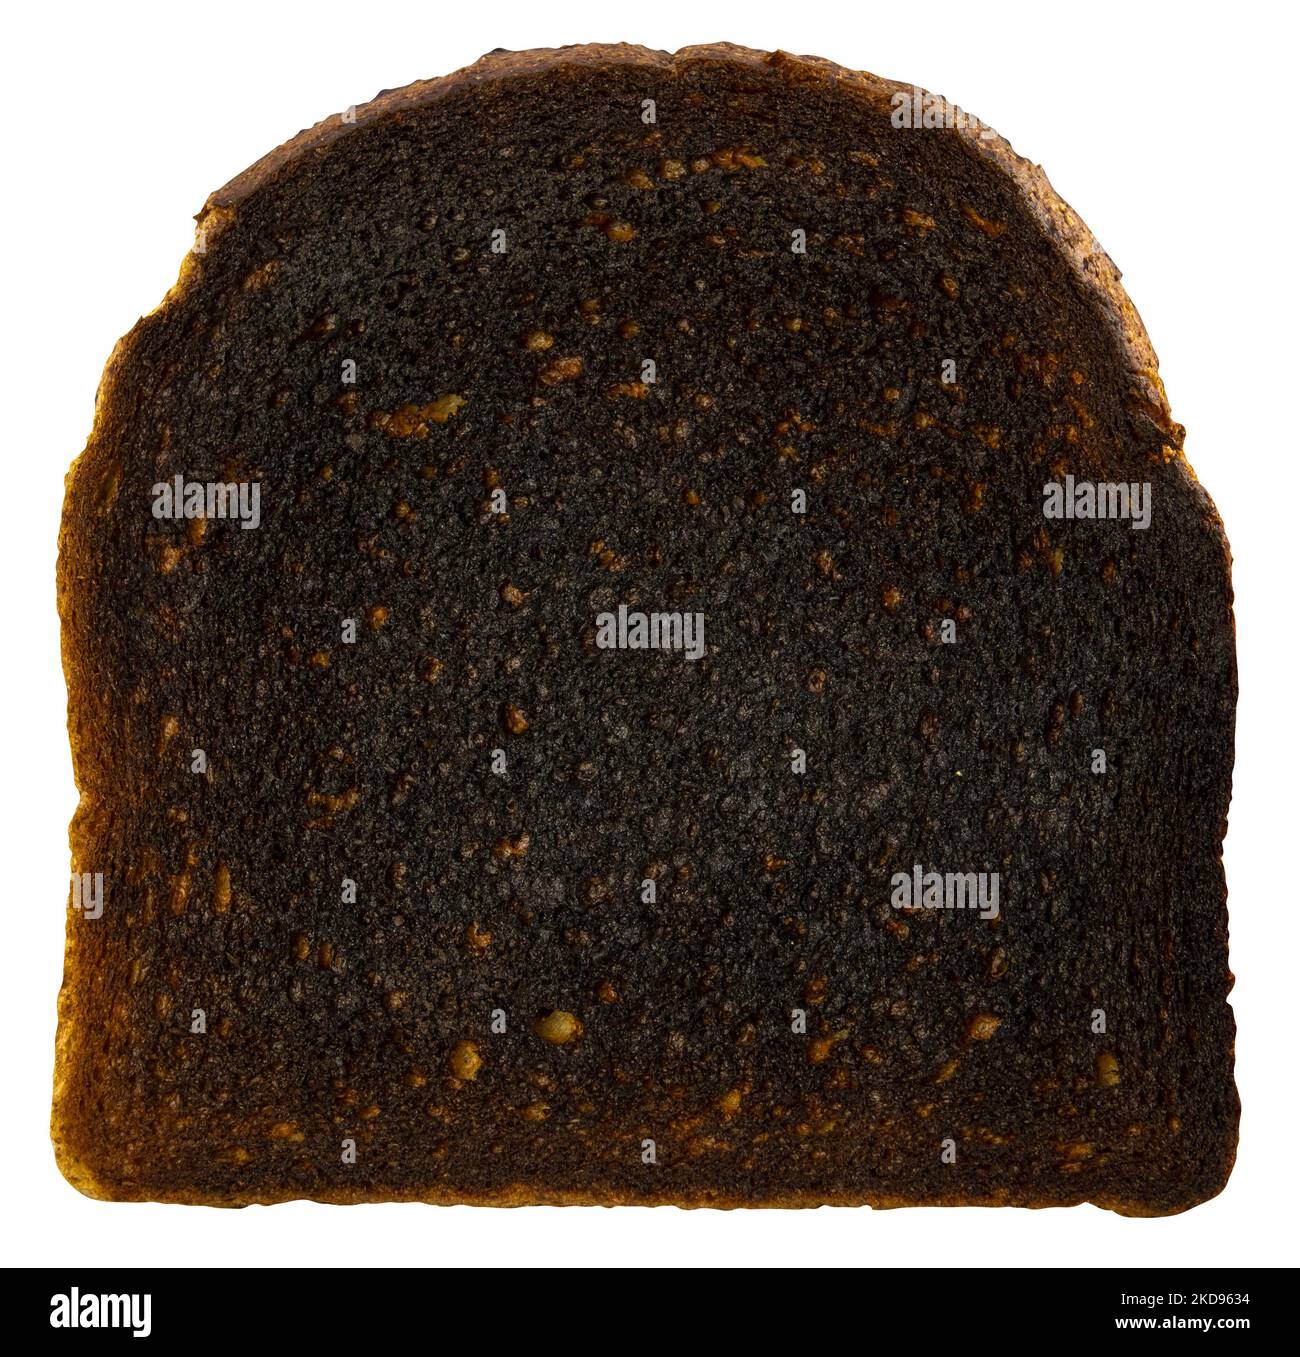 Image isolée d'Un morceau de pain grillé Banque D'Images